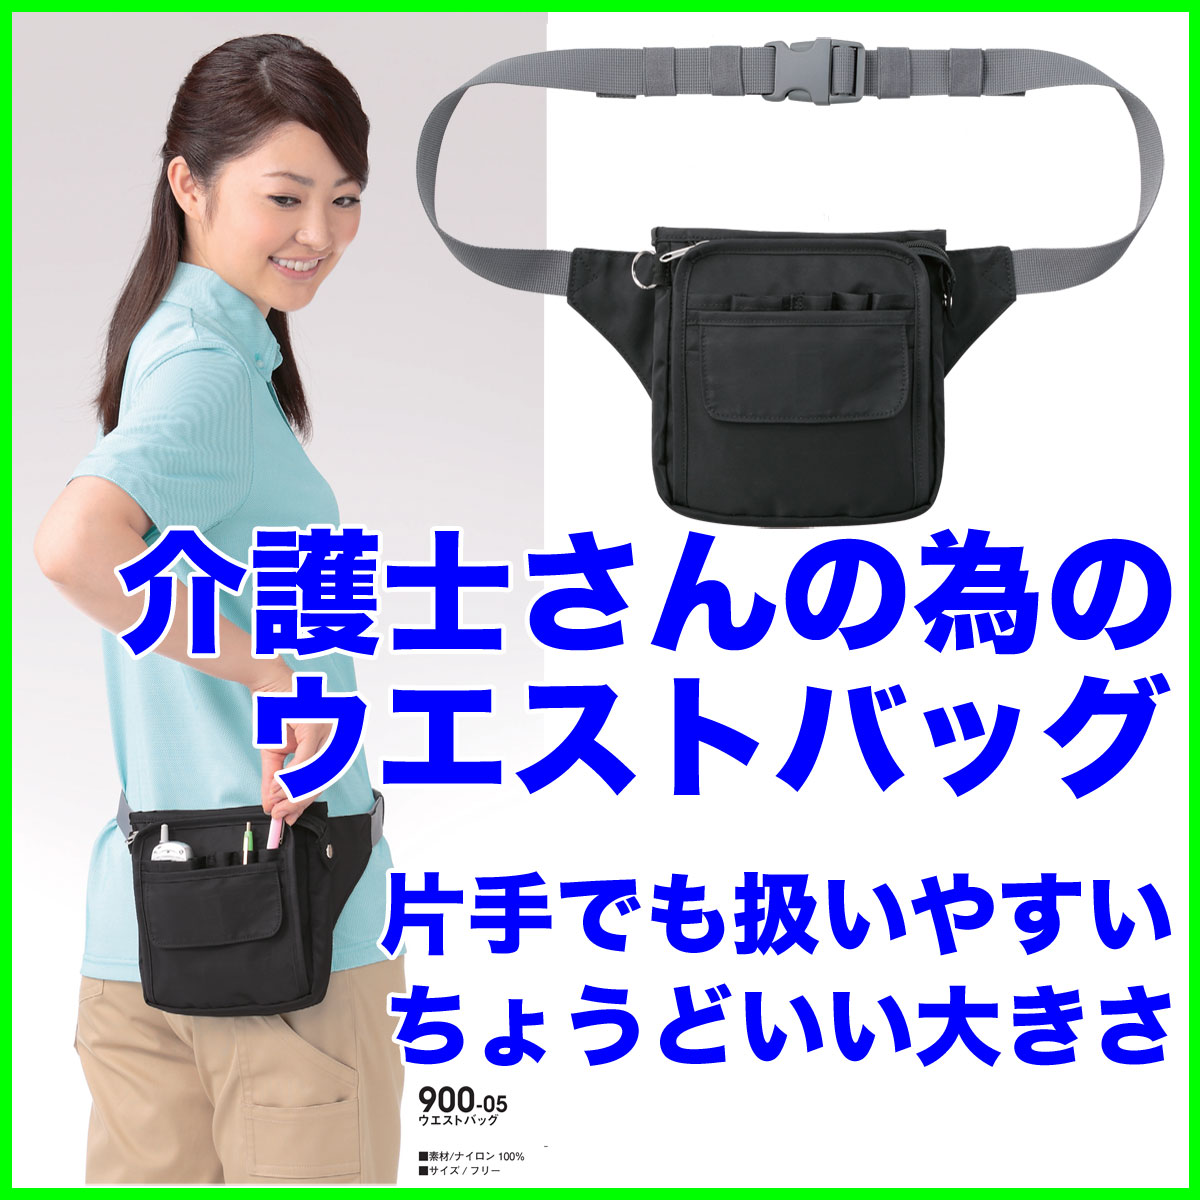 ウエストバッグ片手でも扱いやすく手頃なサイズ。介護士さんのご要望に応えました 900-05…...:yoshiiya:10002500